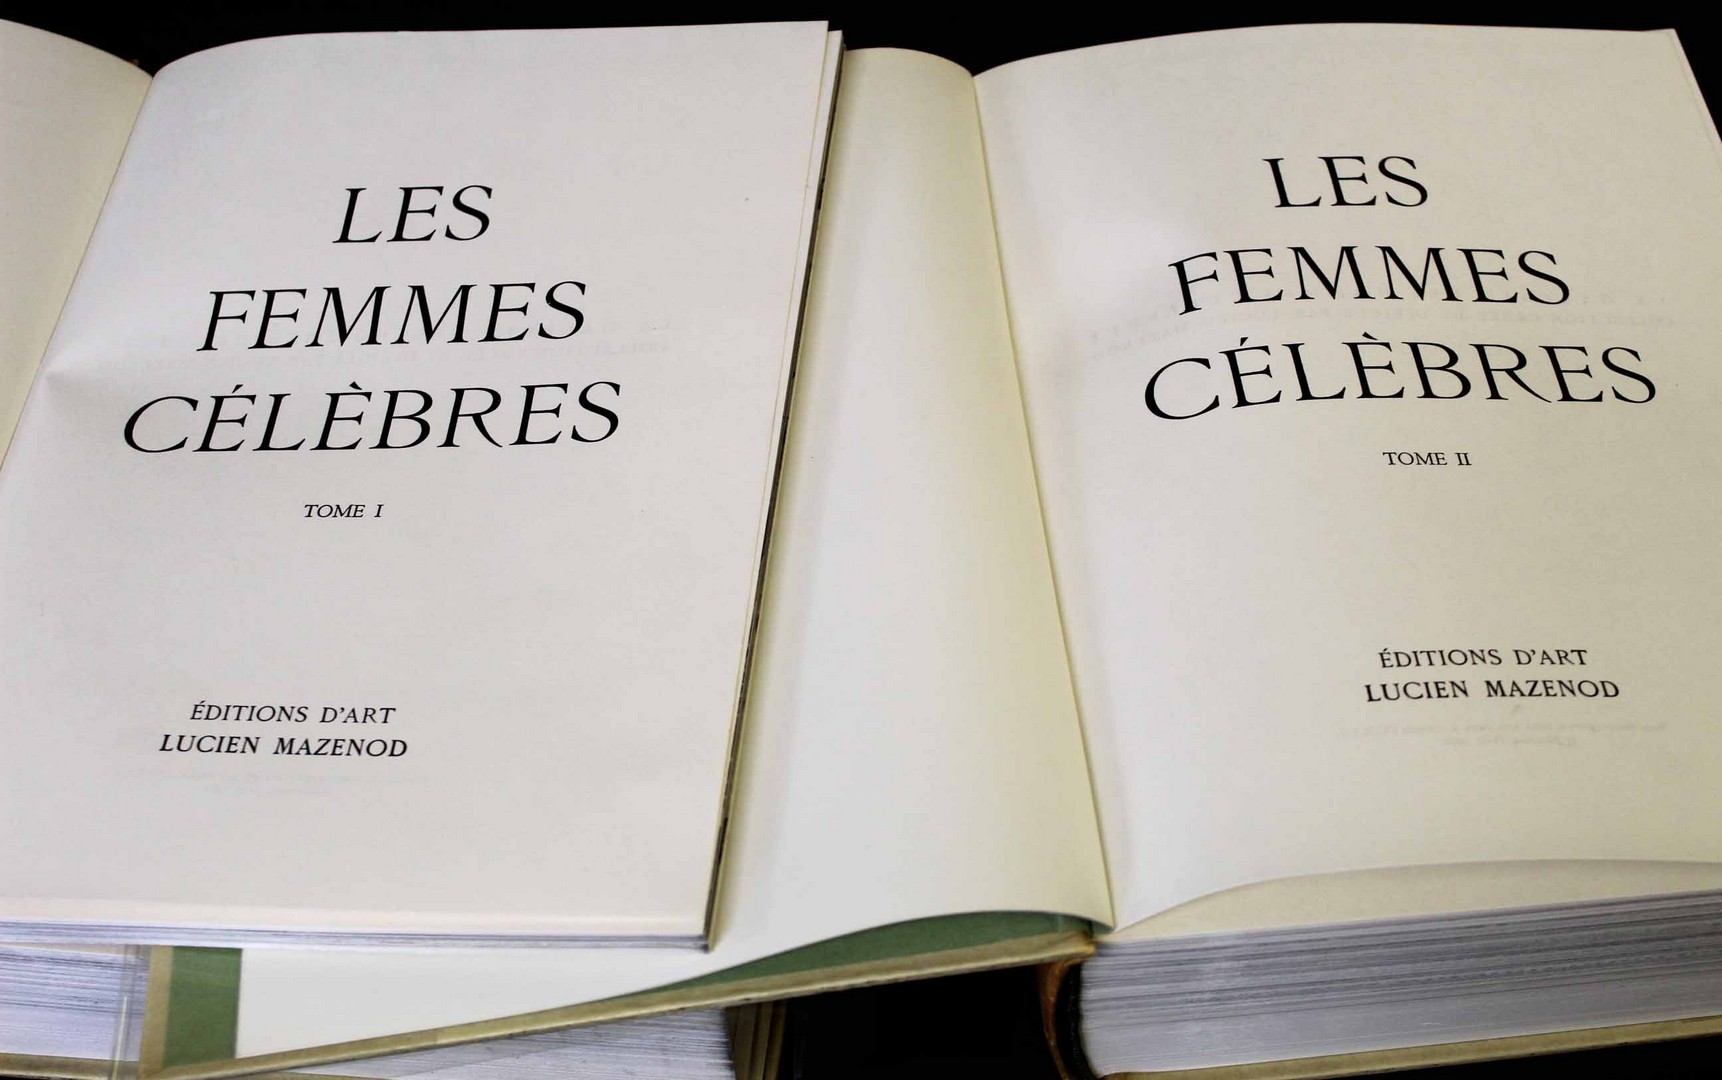 LUCIENE MEZENOD AND OTHERS: LES FEMMES CELEBRE, Paris, Editions D'Art, 1960-61, 1st edition, 2